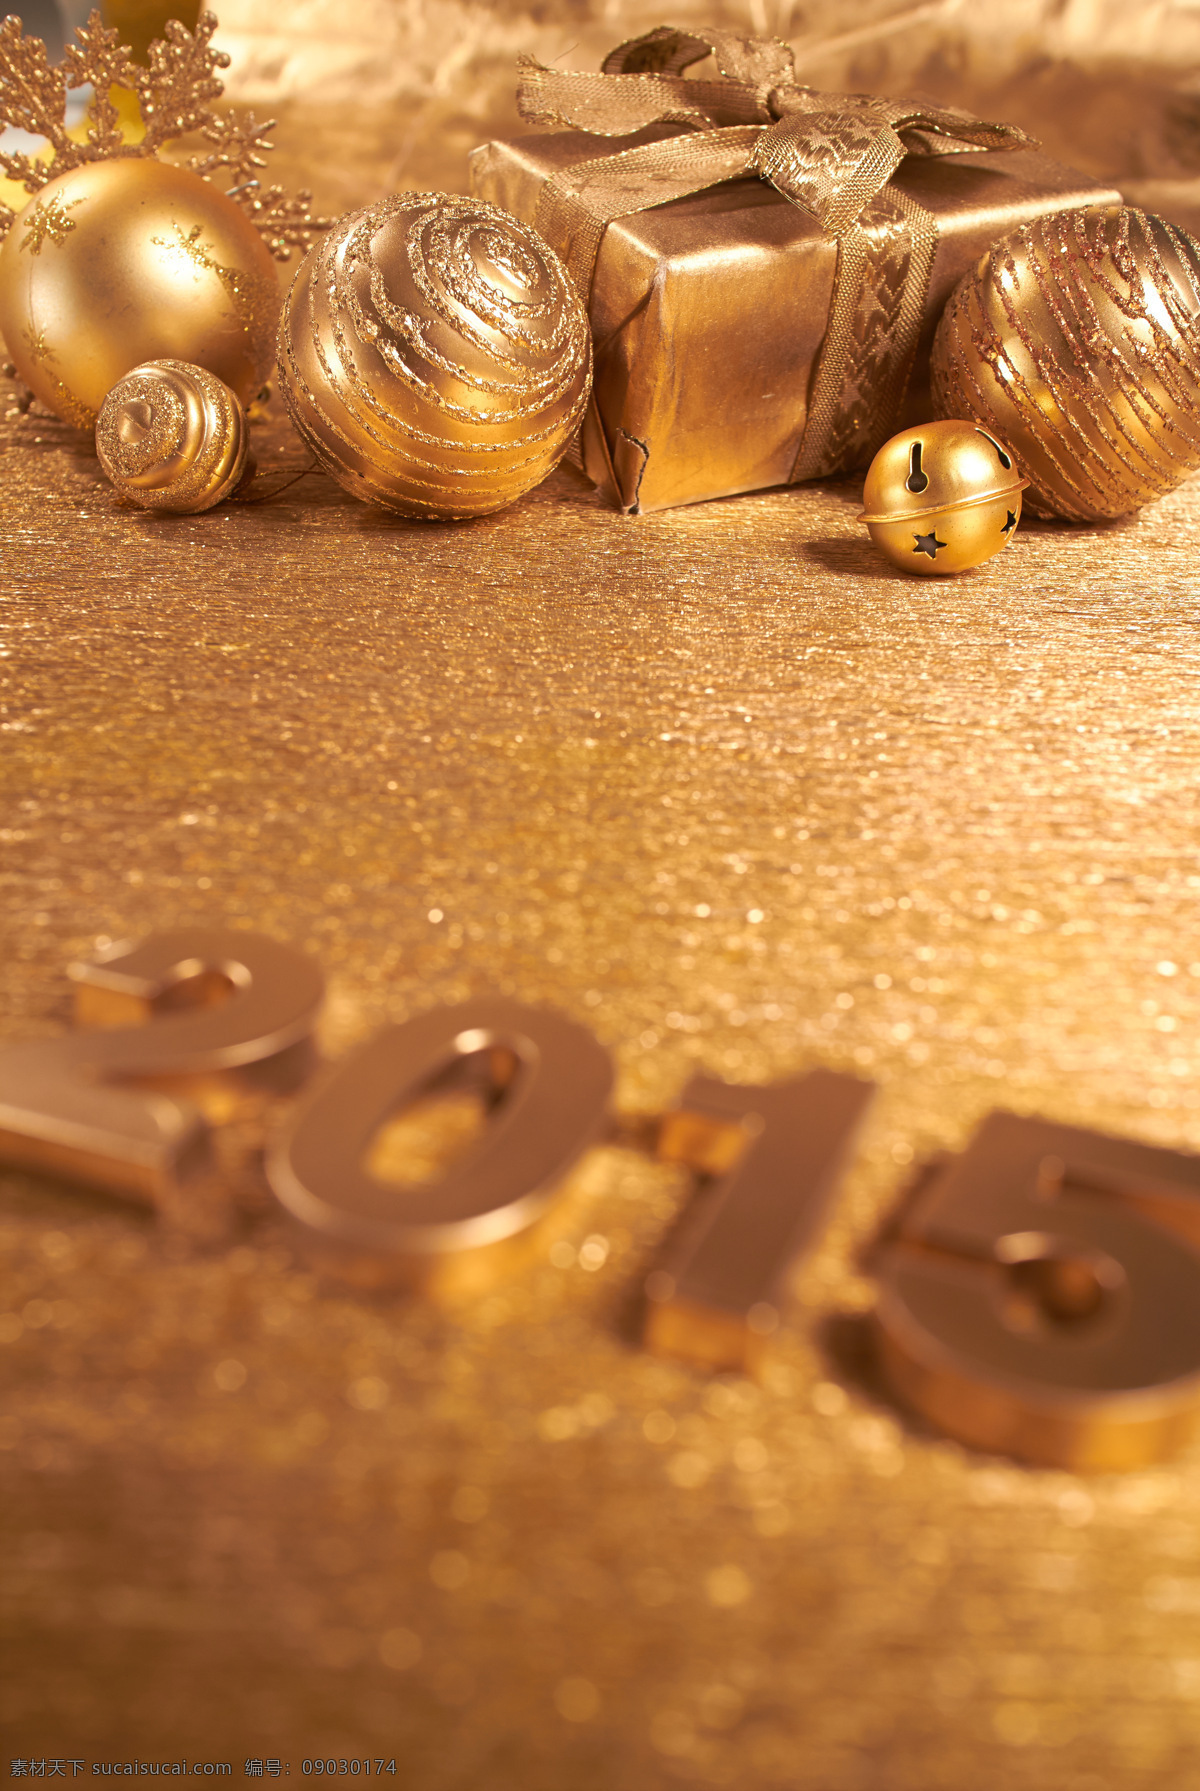 金色 2015 圣诞节 装饰物 新年 圣诞节装饰物 金色圣诞球 铃铛 圣诞节图片 生活百科